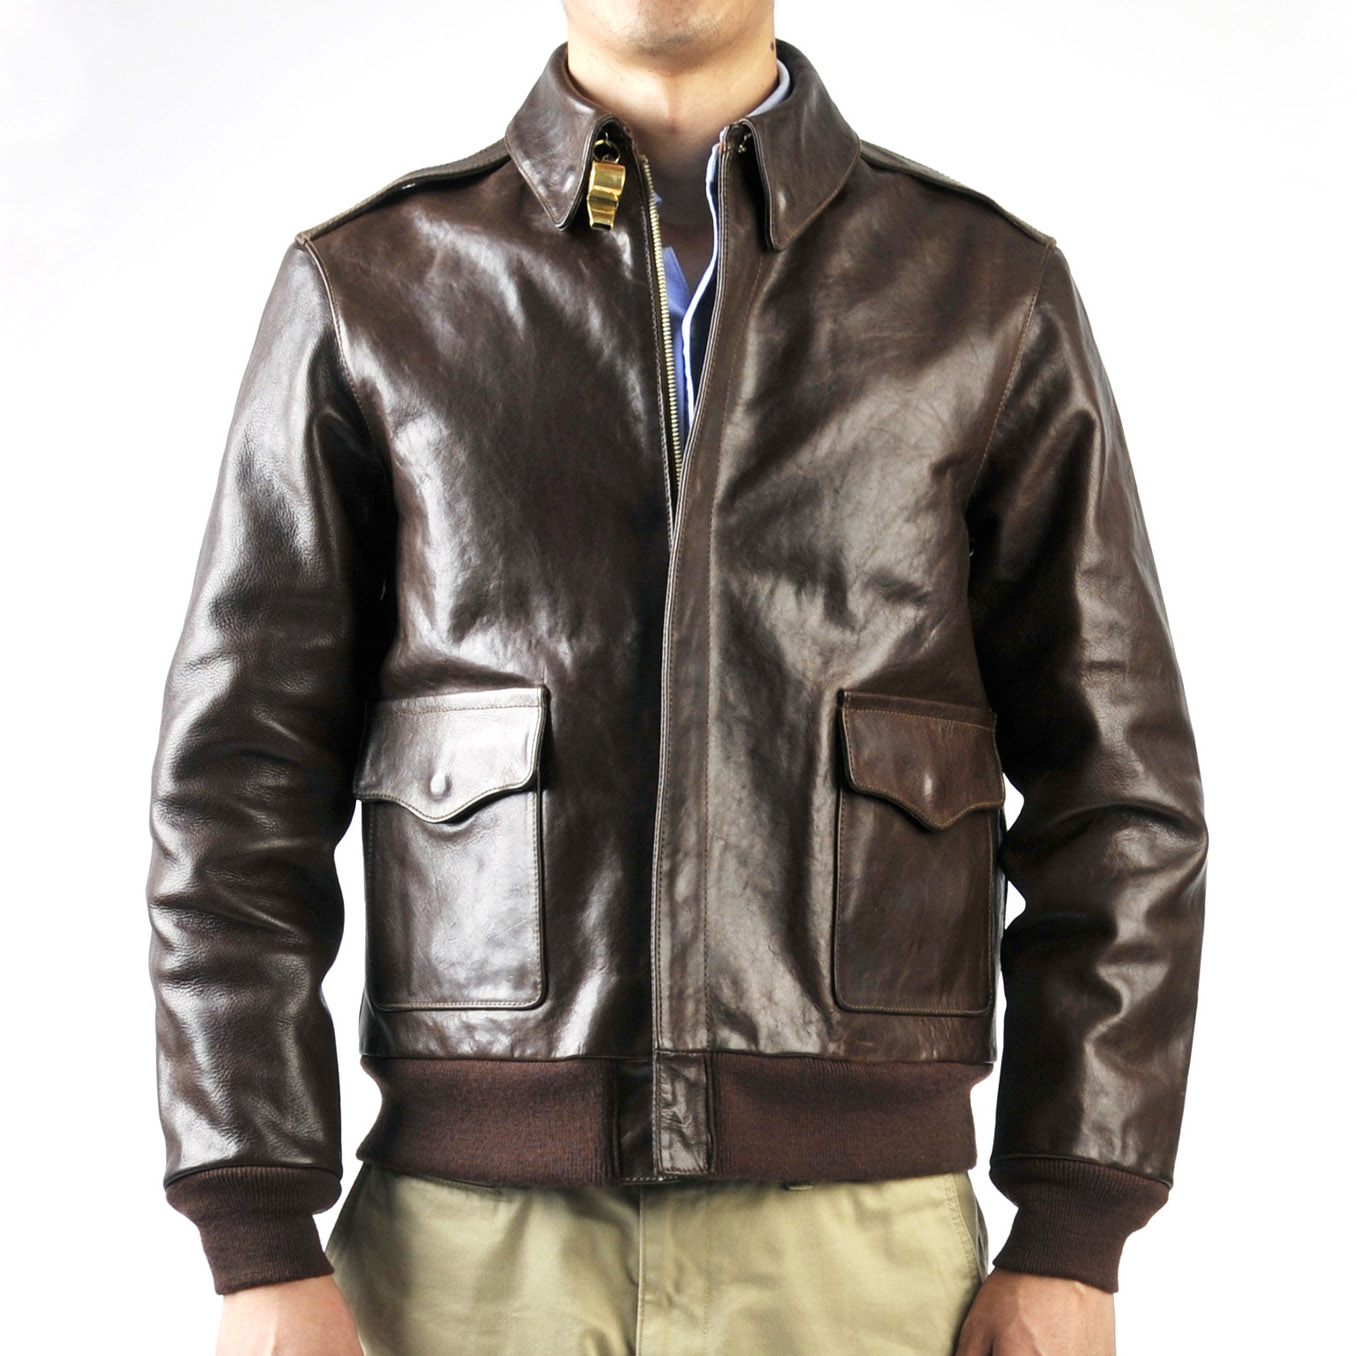 AVI LTHR BRONCO A-2 Jacket Review & Pics | Page 18 | Vintage Leather ...